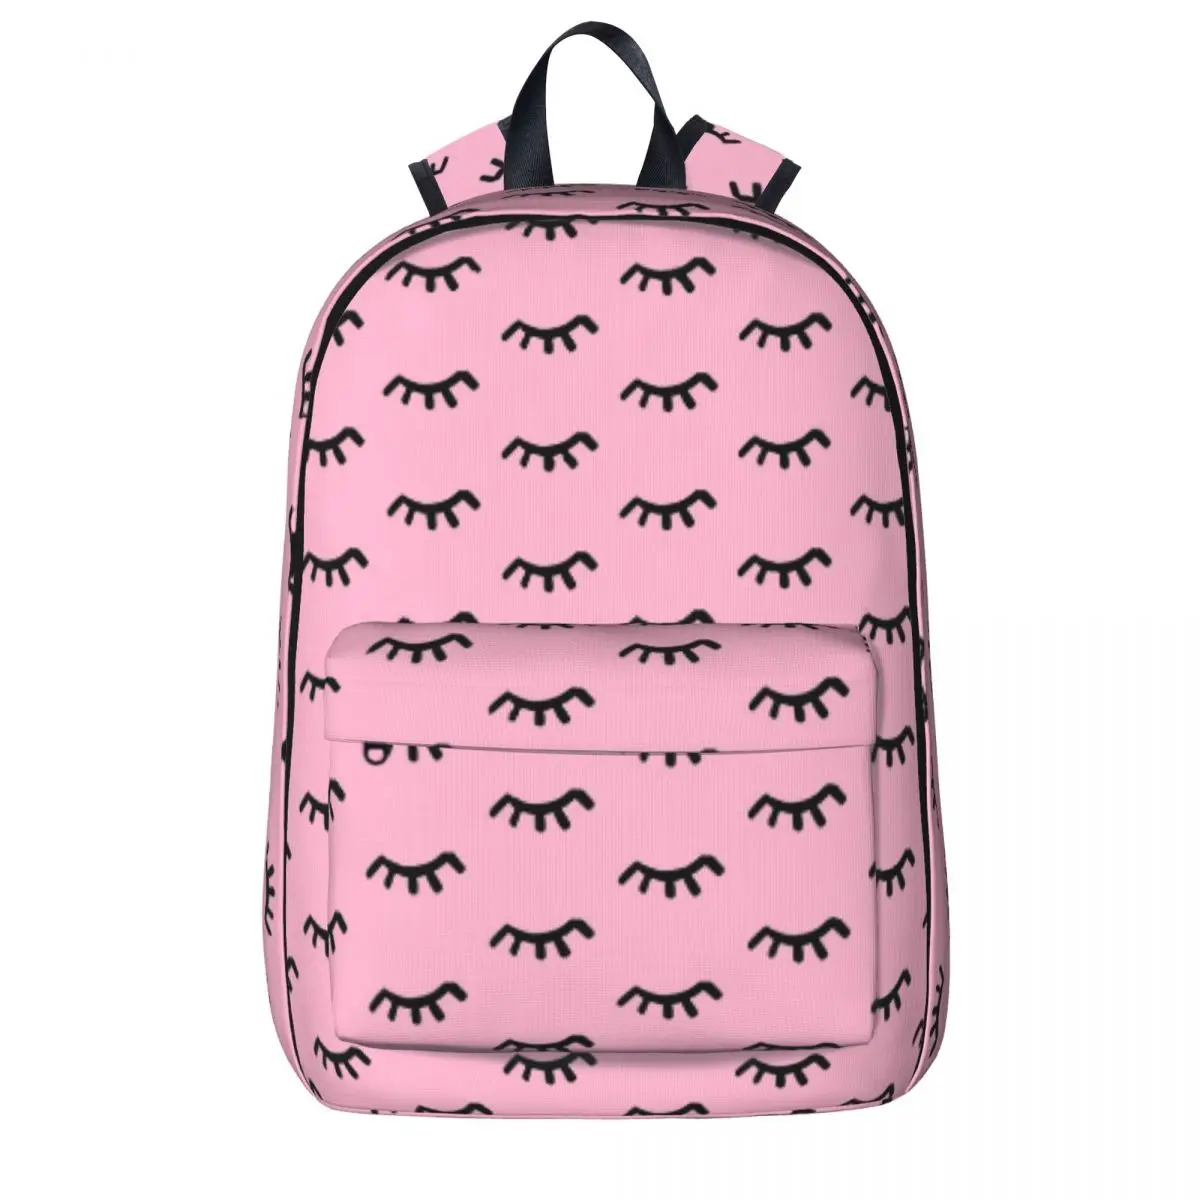 

Рюкзак с ресницами для студентов, Мультяшные большие рюкзаки с закрытыми глазами, милые школьные ранцы из полиэстера, повседневные красочные рюкзаки